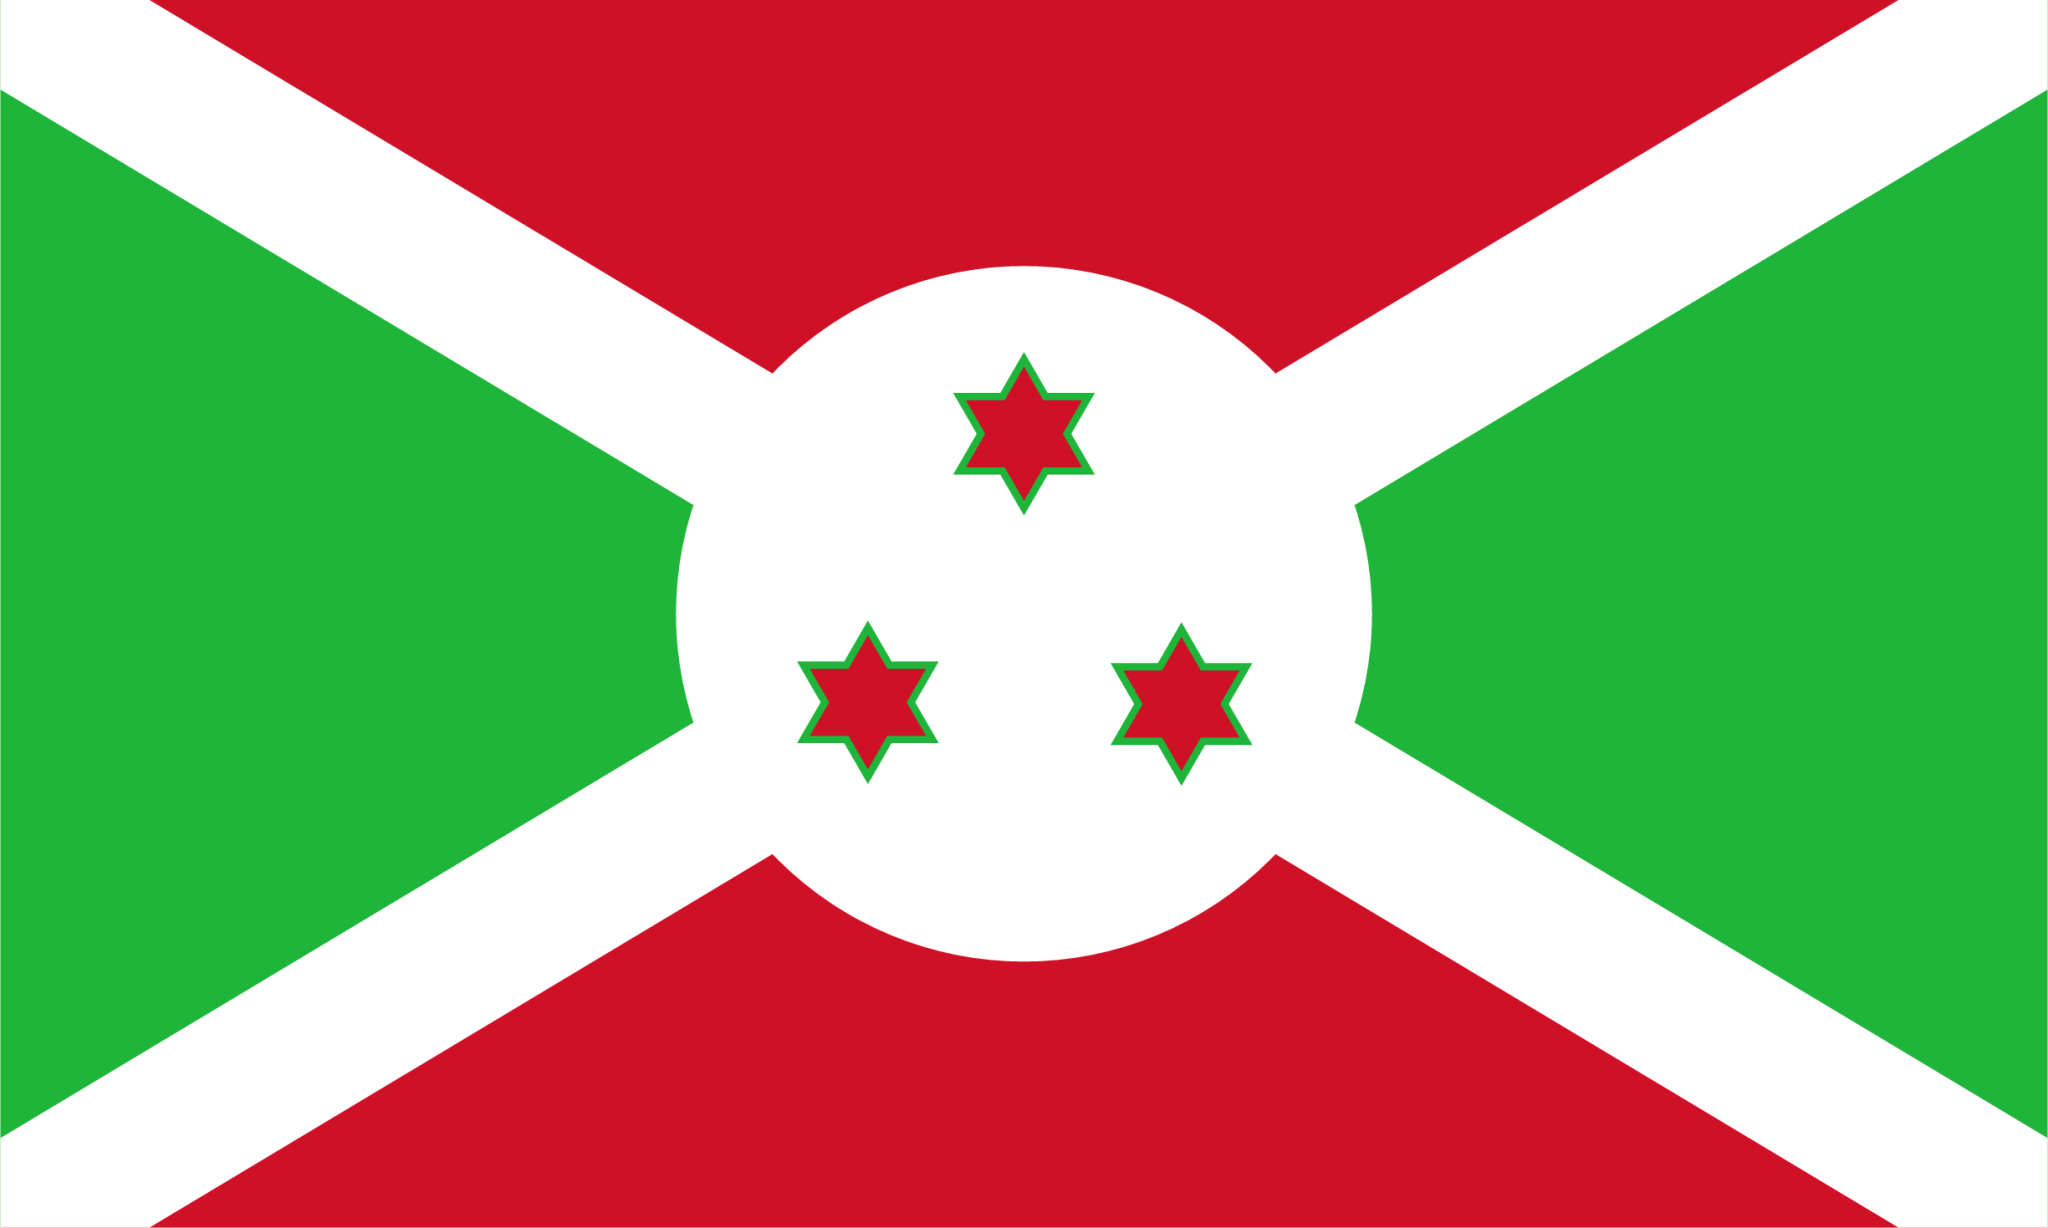 bi flag icon